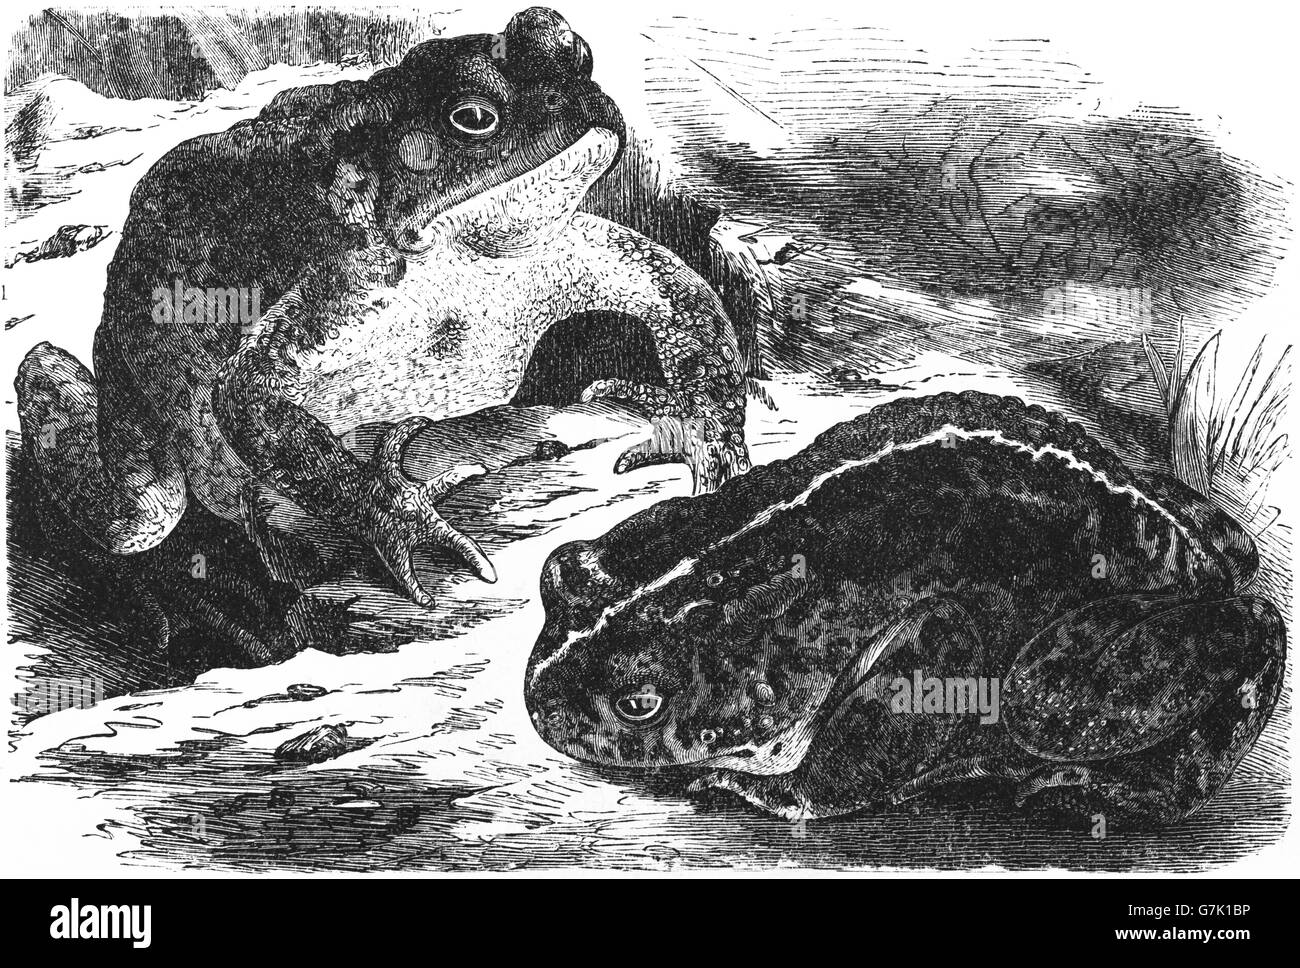 Crapaud commun, Bufo bufo Crapaud européen et crapaud calamite (Bufo calamita, illustration de livre daté 1904 Banque D'Images